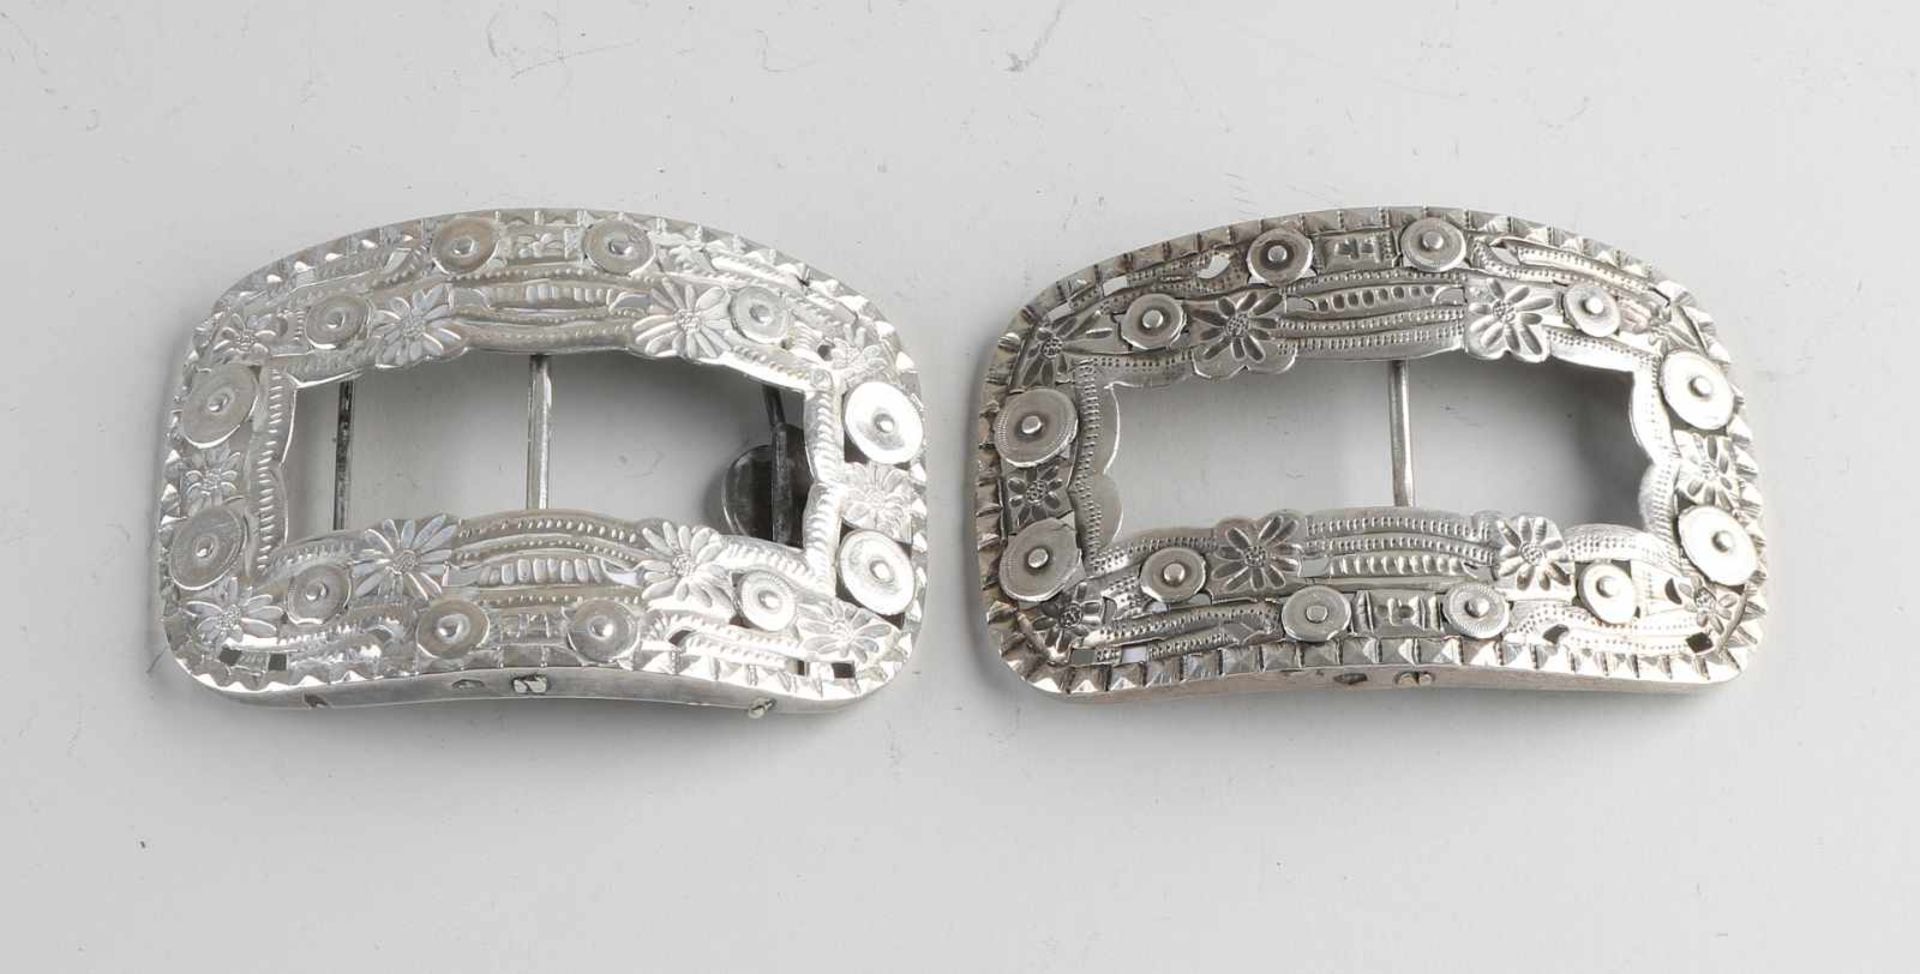 Silberne Schuhschnallen, 833/000, mit Münzen und Blumendekor. 10x6cm. insgesamt ca. 105 Gramm. I